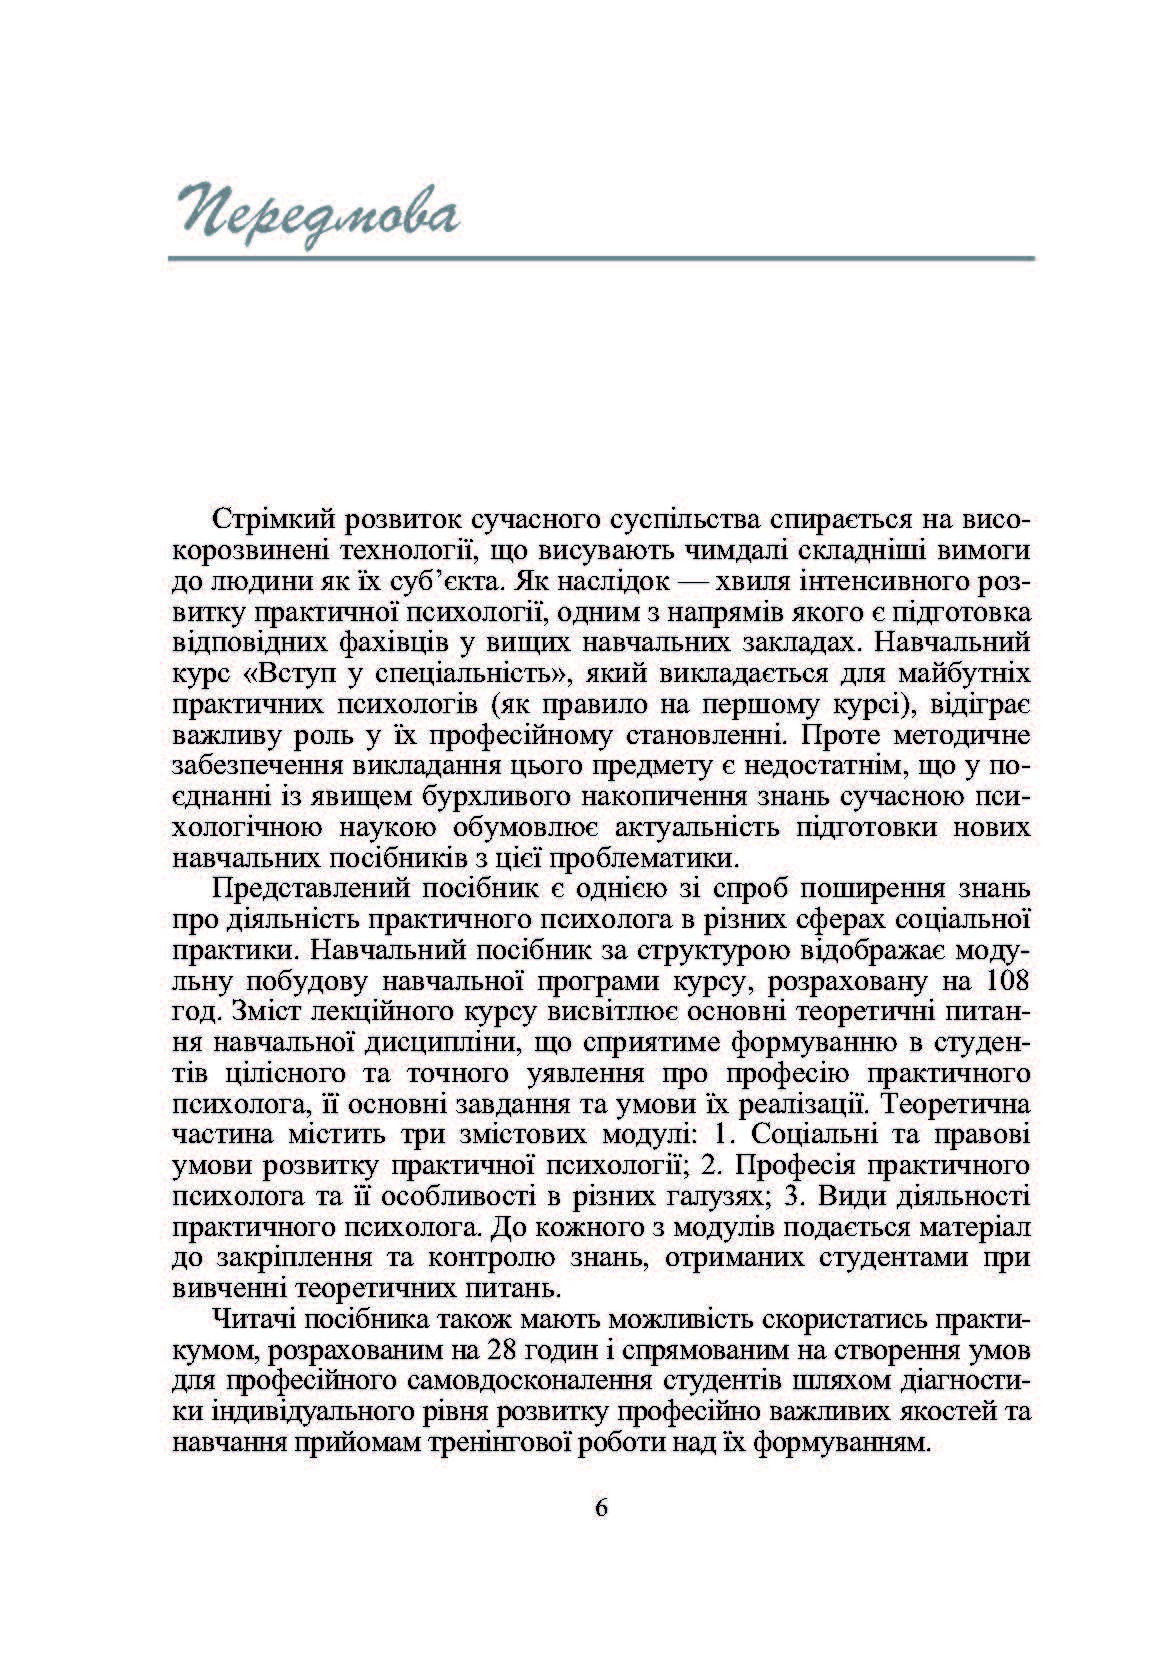 Практична психологія: вступ до спеціальності. 2-ге видання.. Автор — Дуткевич Т.В.. 